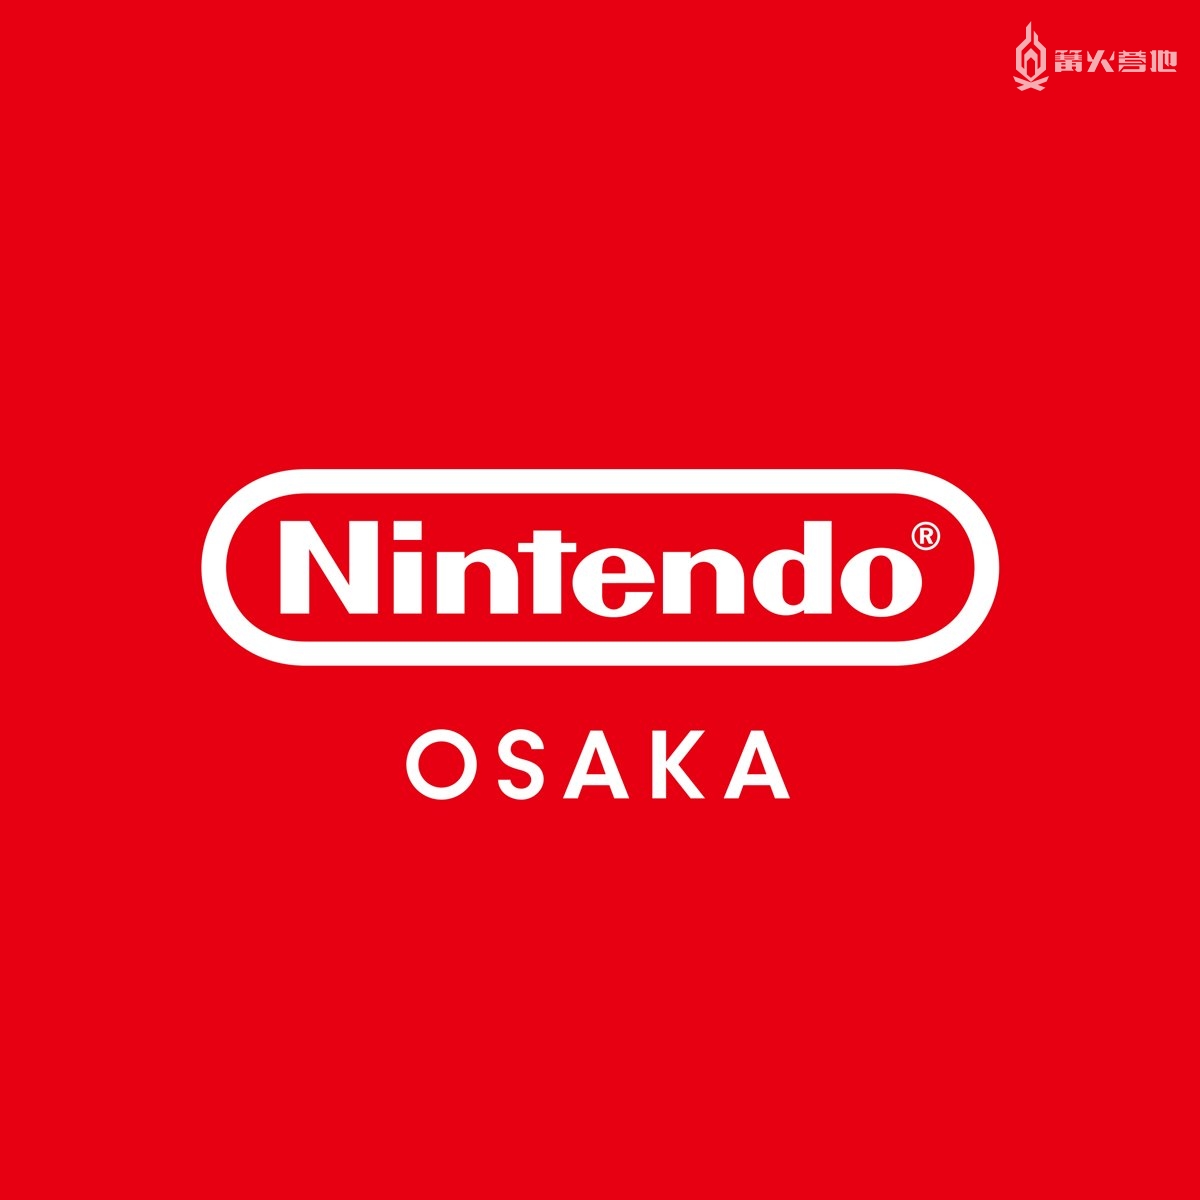 任天堂将在日本大阪开设第二家直营店「Nintendo OSAKA」